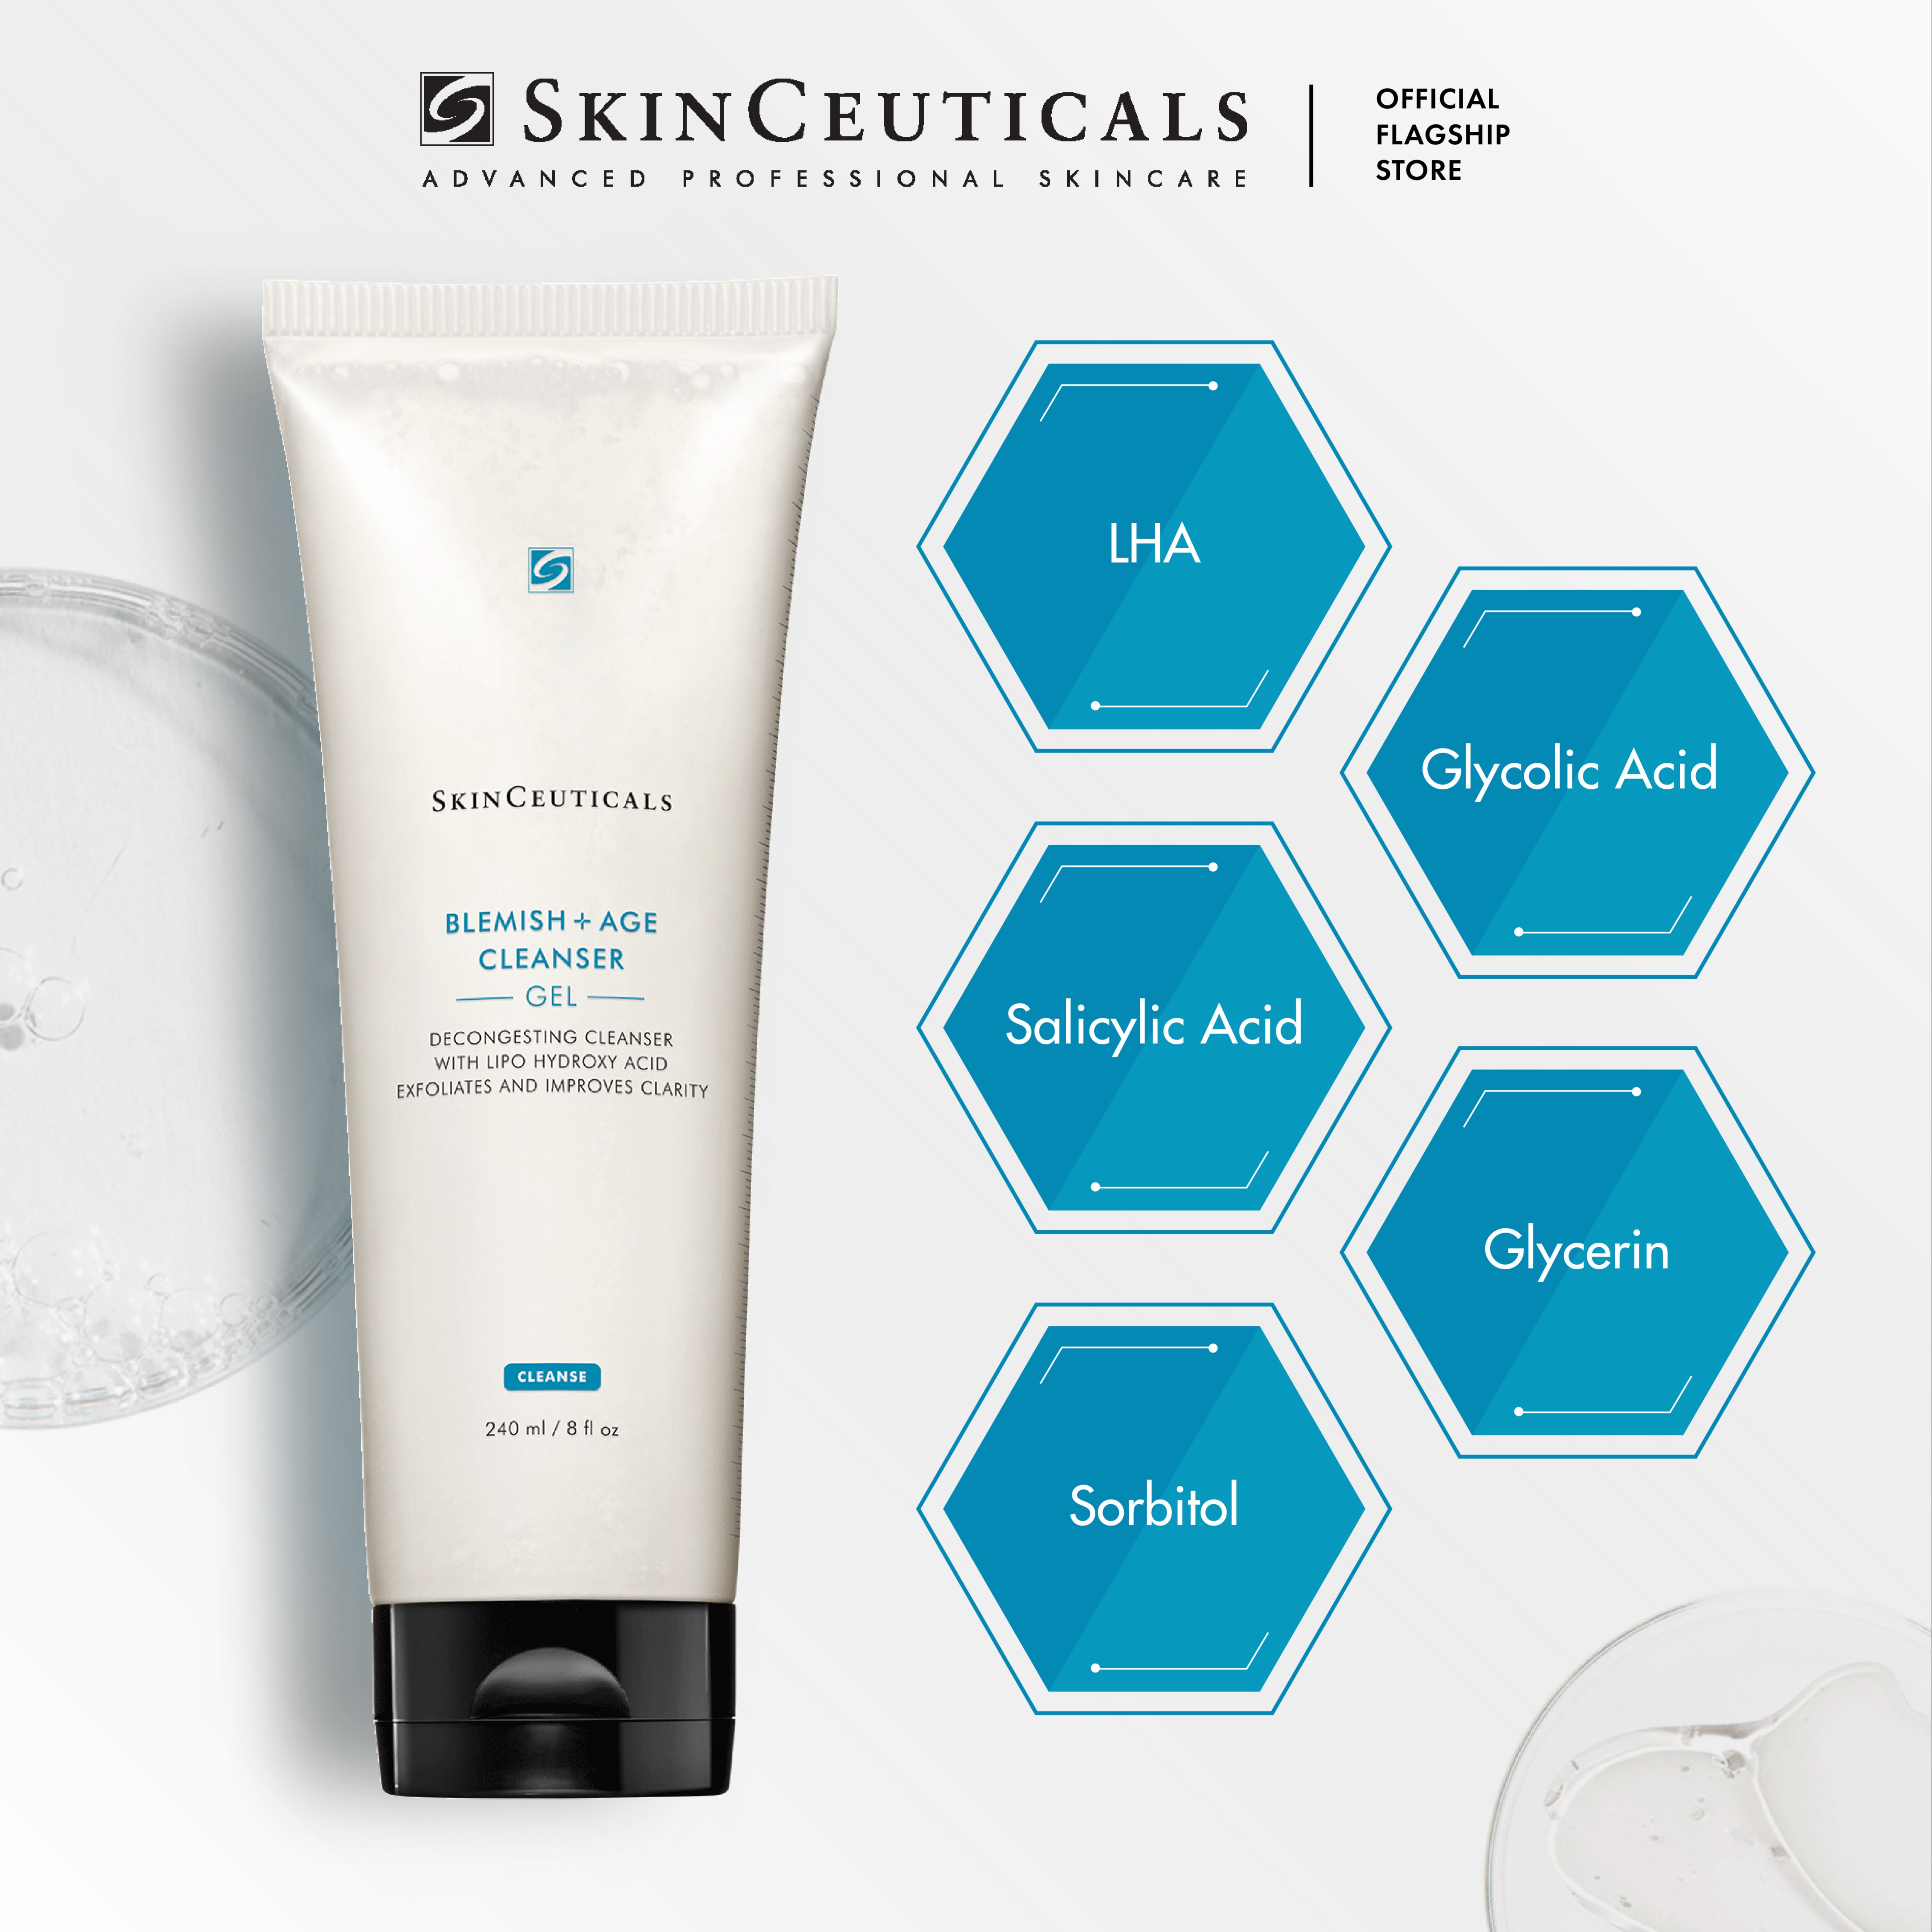 Sữa rửa mặt dạng gel chuyên biệt Skinceuticals Blemish + Age Cleanser Gel giúp giảm mụn làm sạch tế bào da chết và hông thoáng lỗ chân lông 240ml